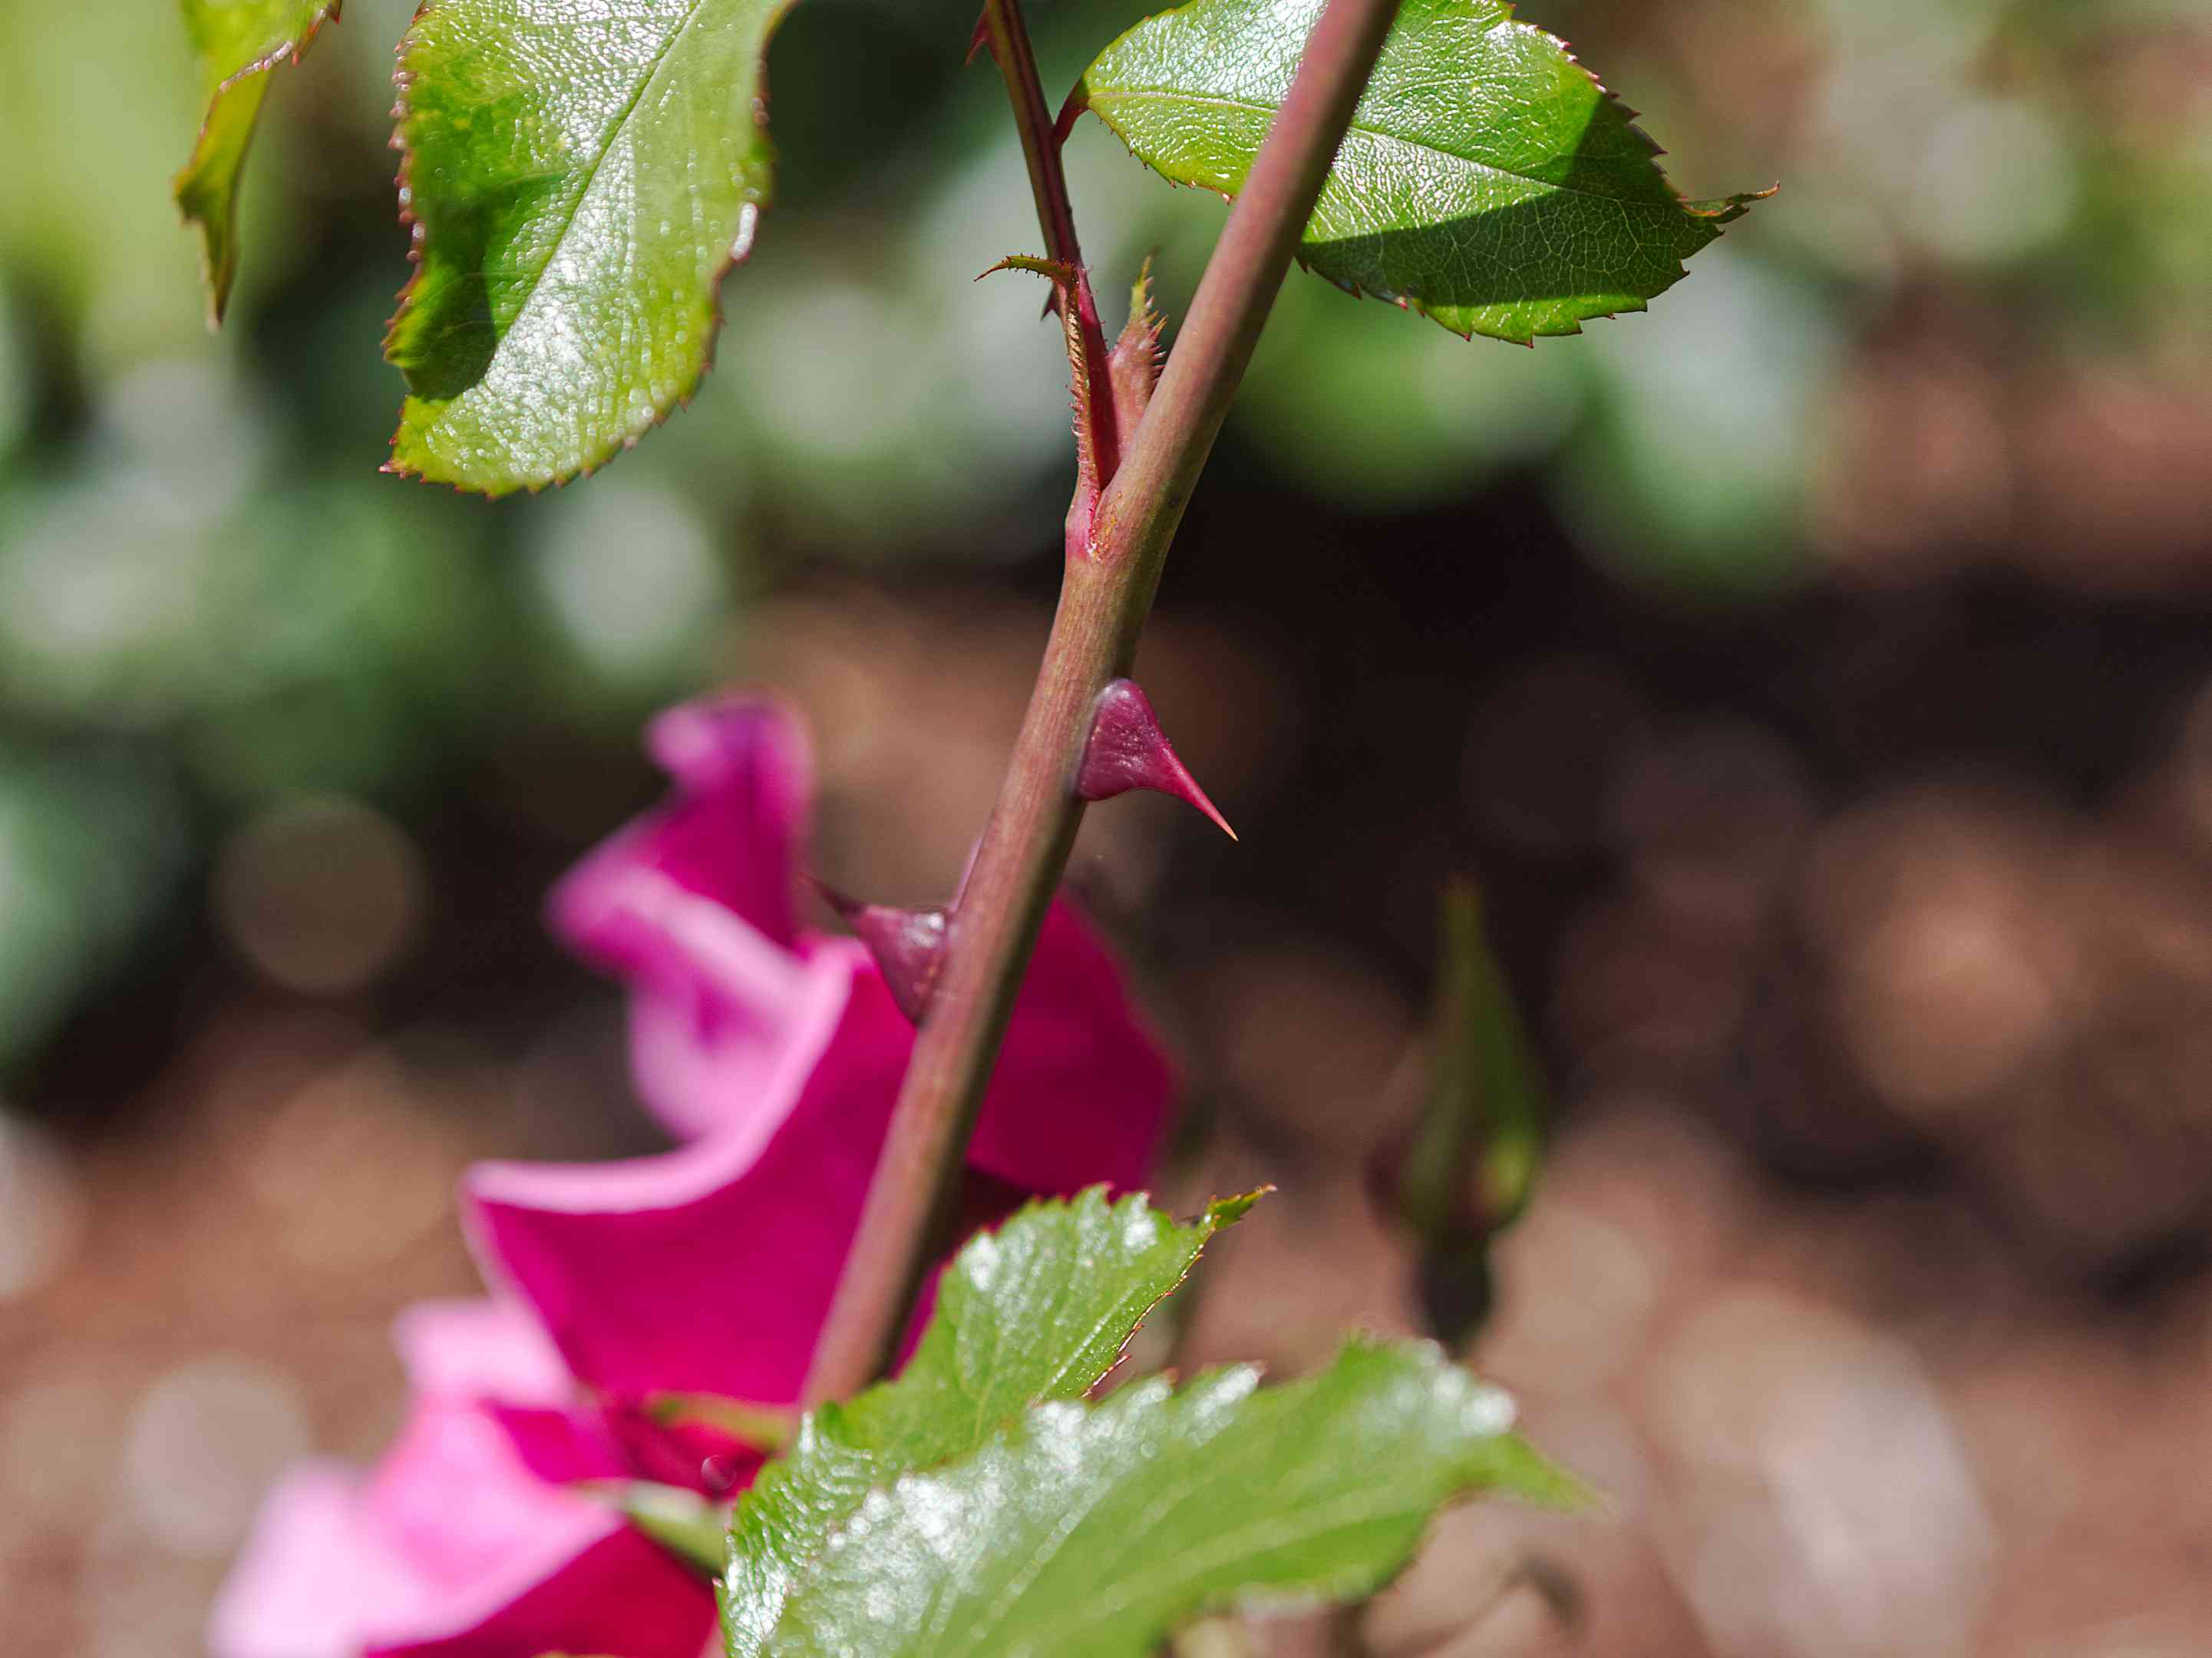 粉红色玫瑰灌木茎与节点和叶子的近视图